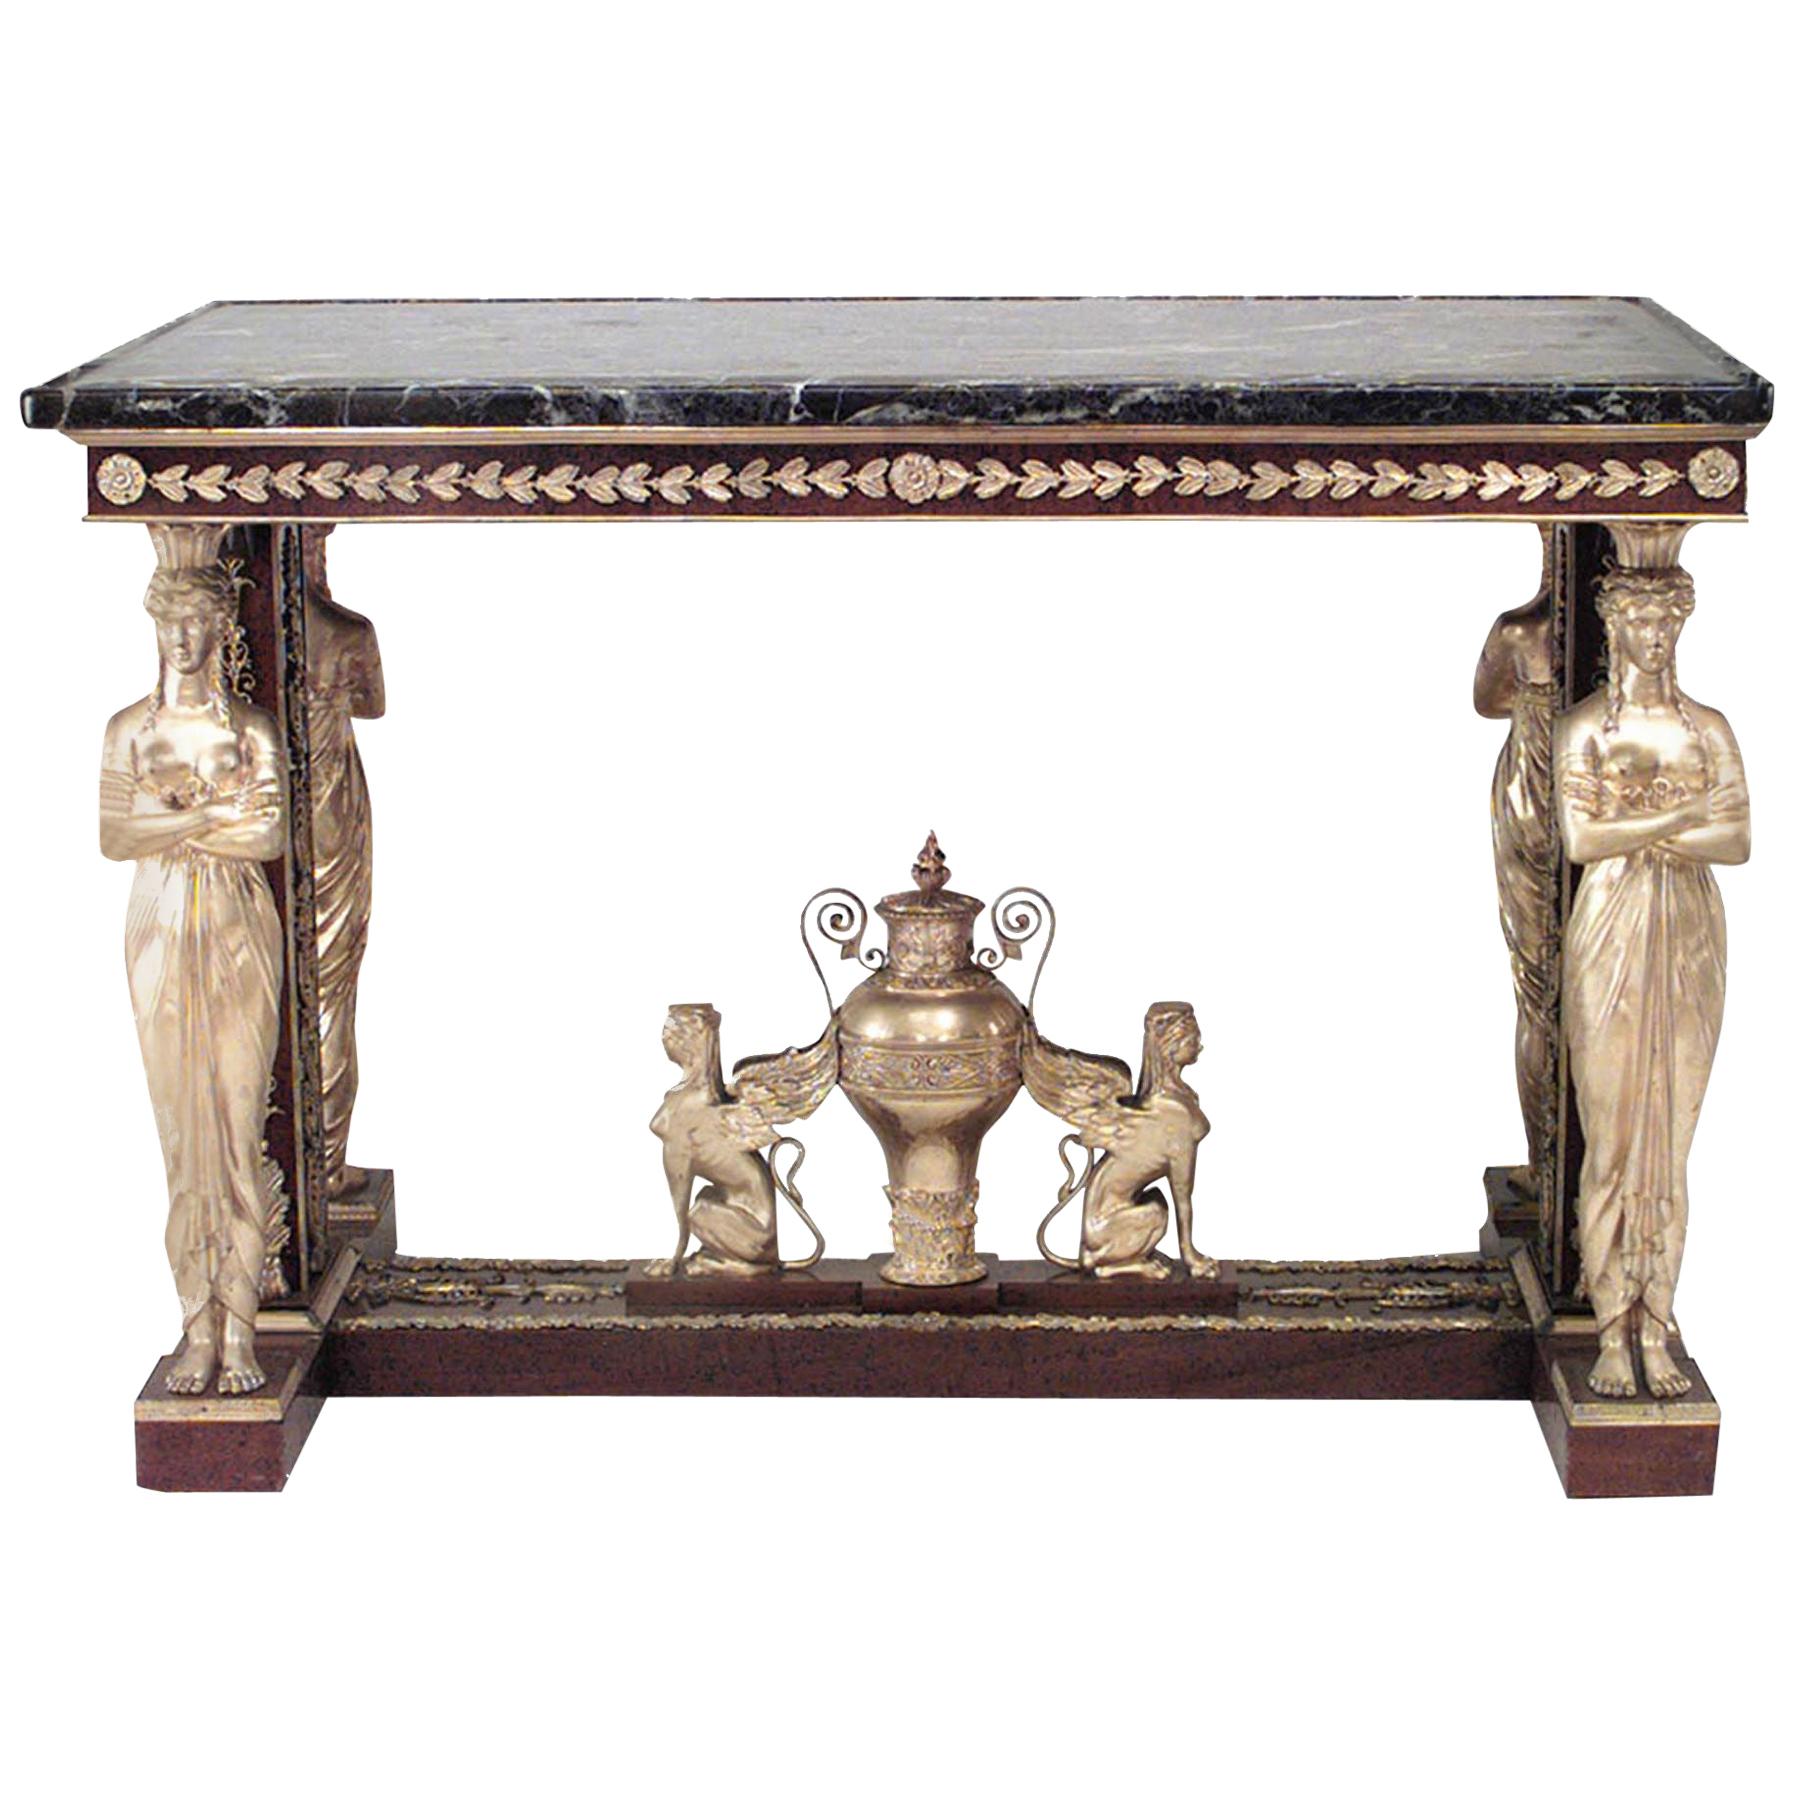 Table centrale en acajou de style néo-empire français d'après Jacob-Desmalter